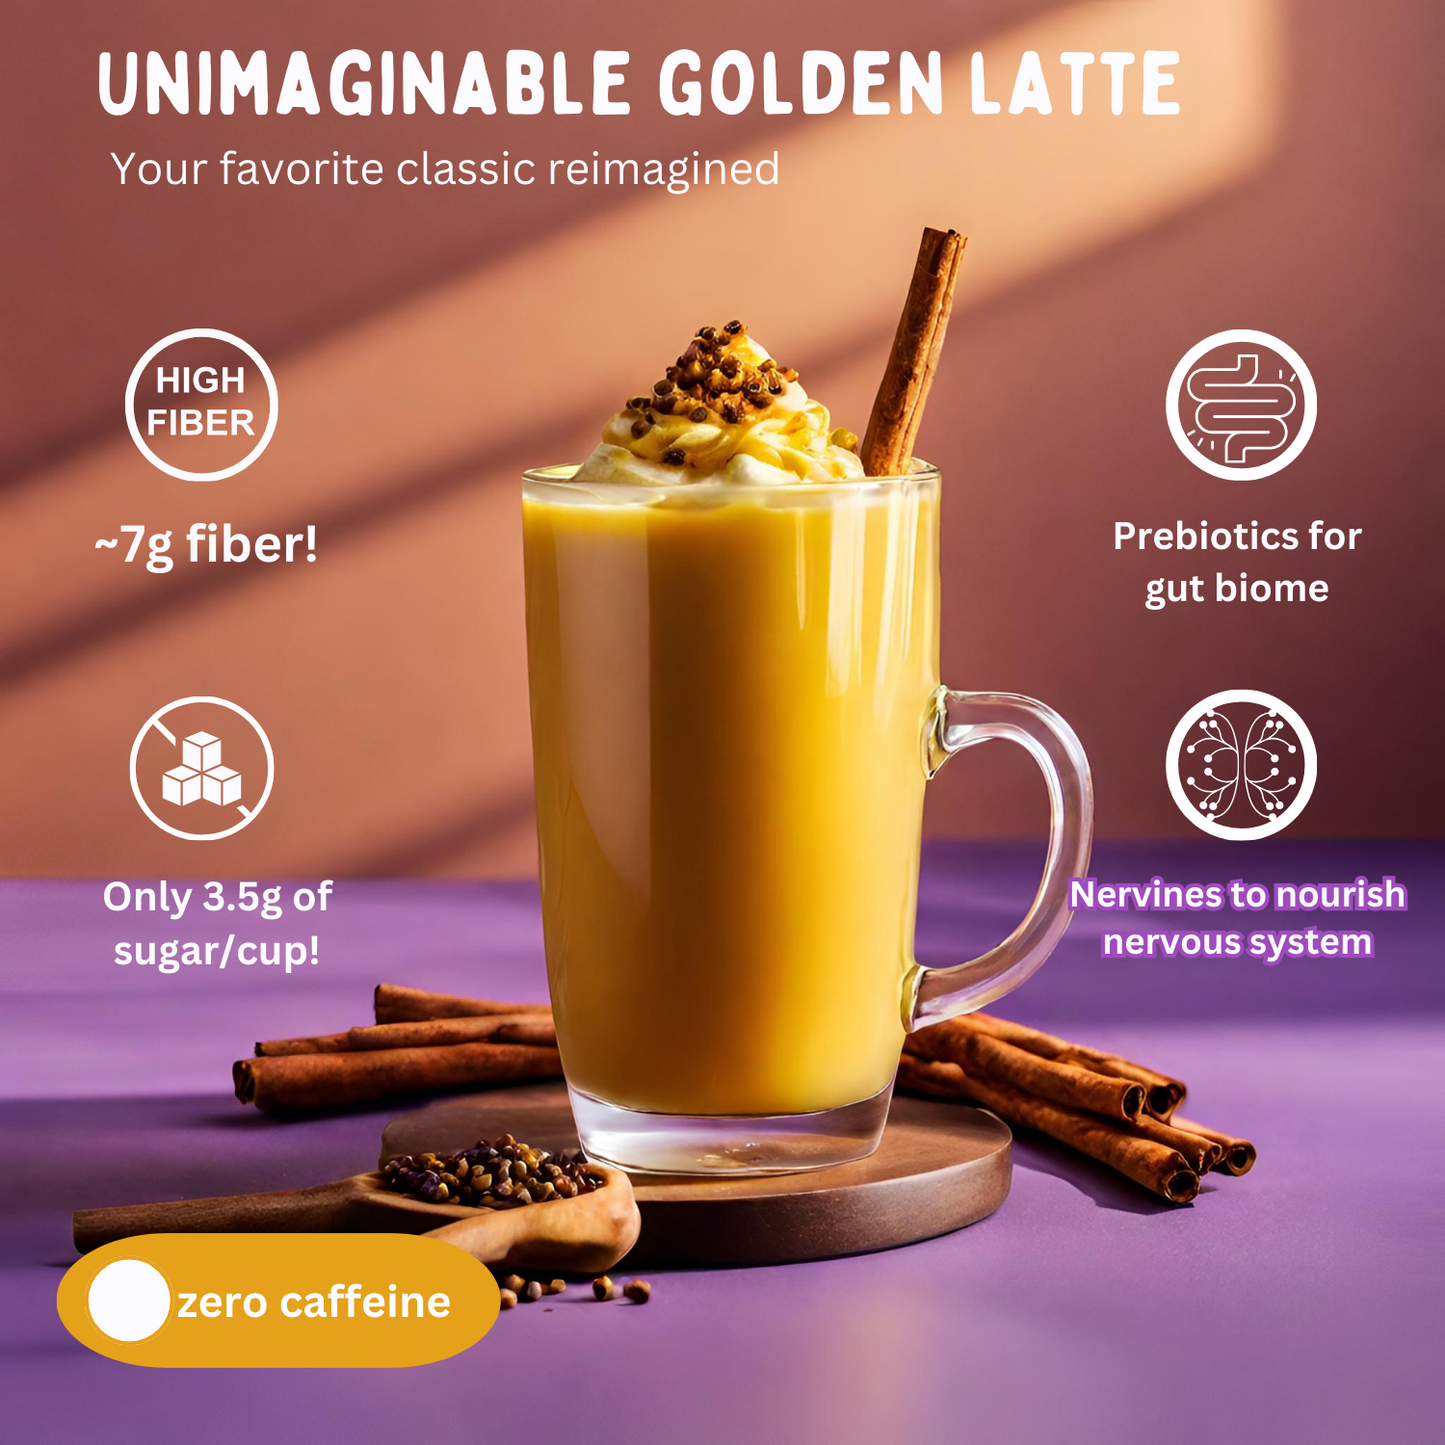 Unimaginable Latte Mix Golden